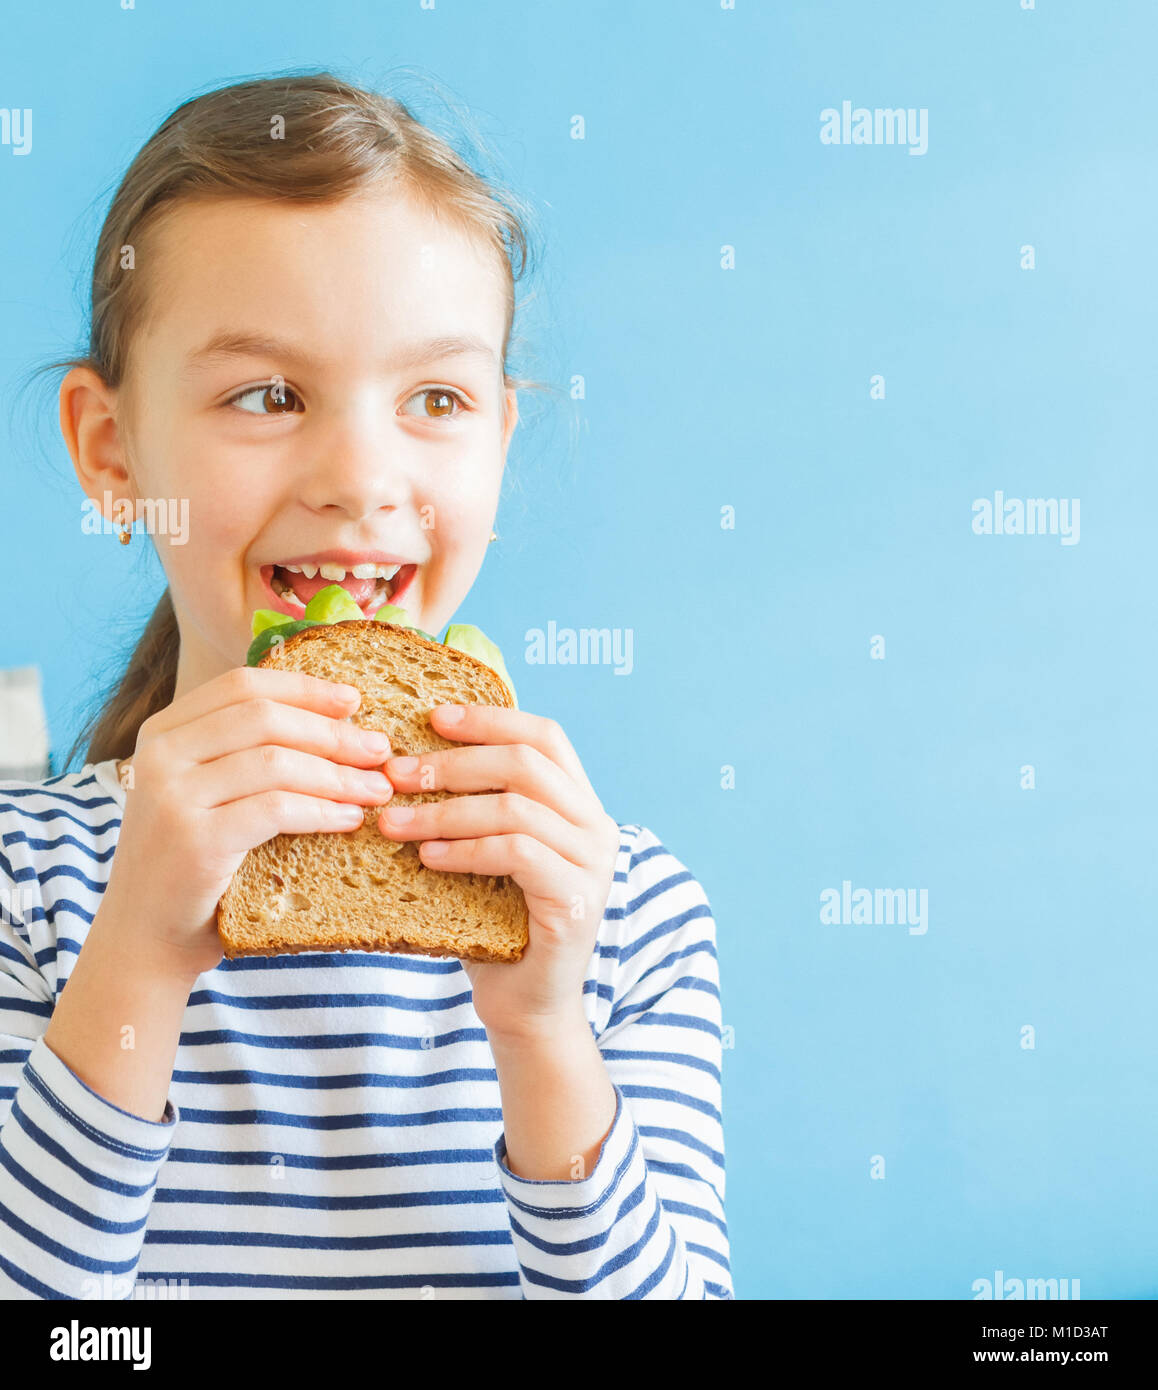 Smiling girl eating sandwich sain avec la salade et les avocats Banque D'Images